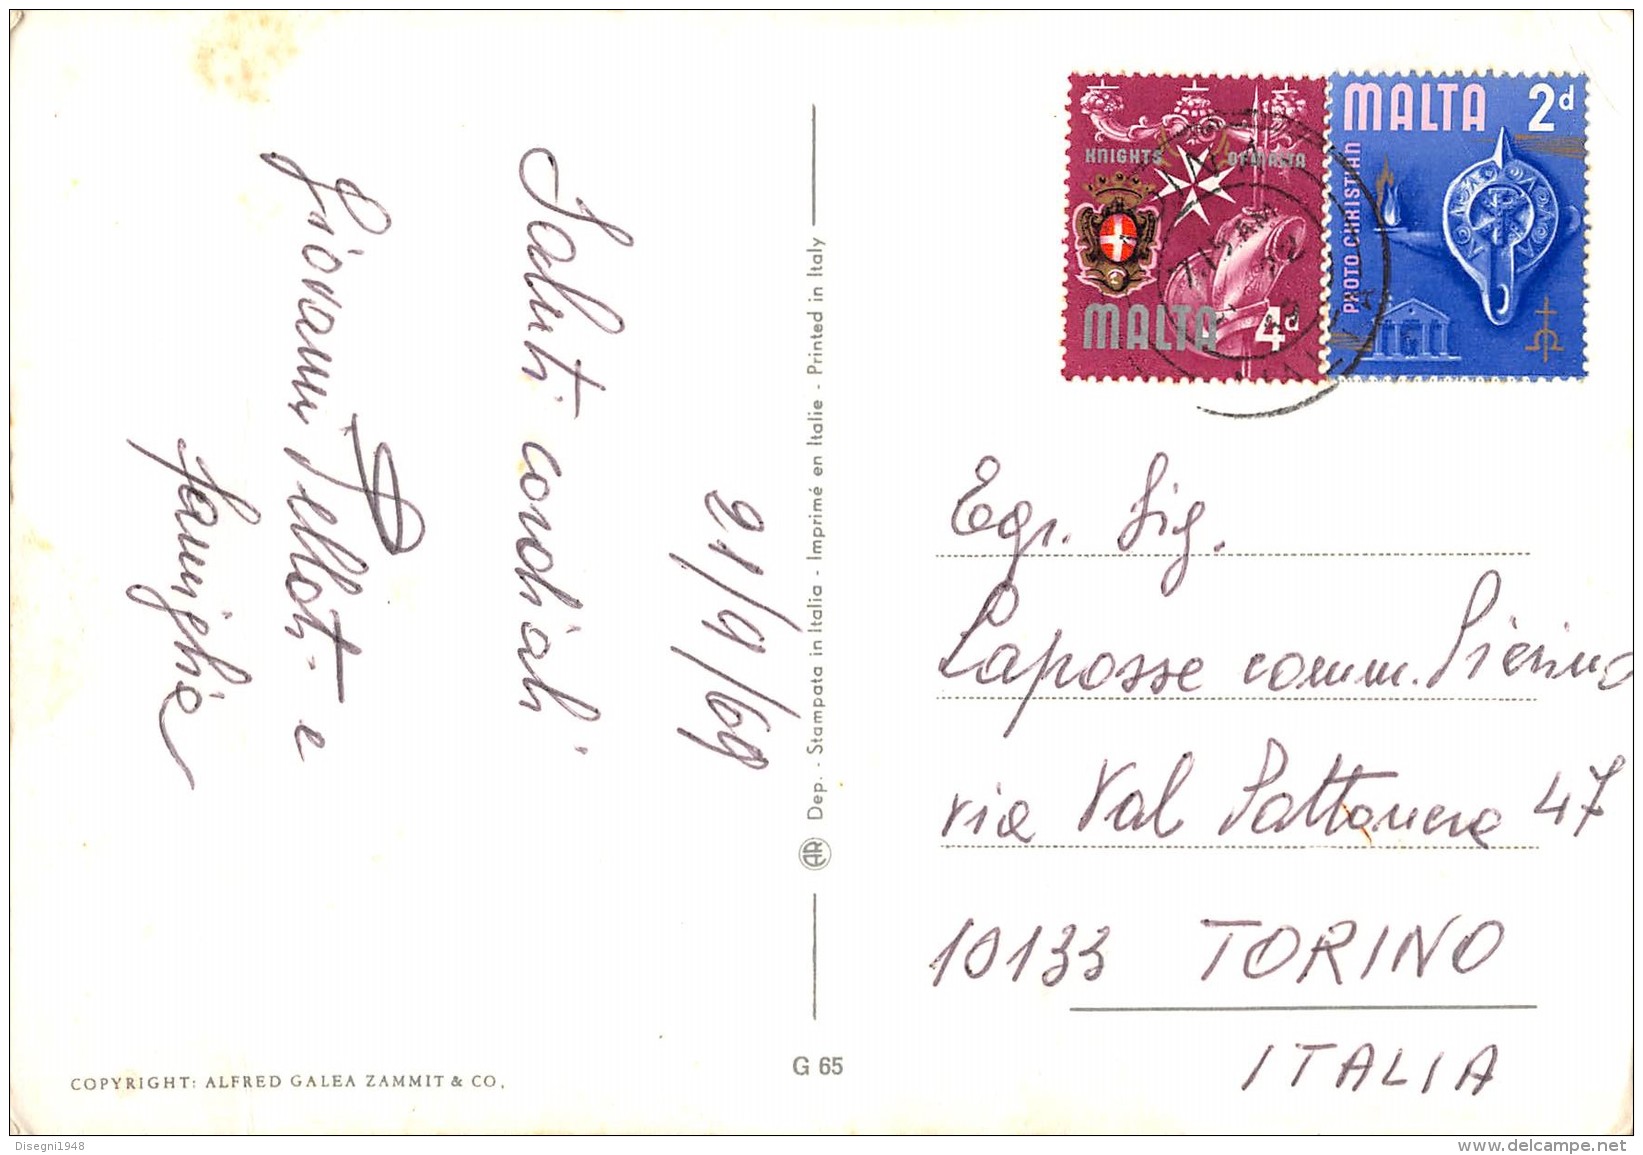 06715  "MALTA - ARGOTTI GARDENS - FLORIANA" ANIMATA. CART. ILL. ORIG. SPED. 1969 - Malta